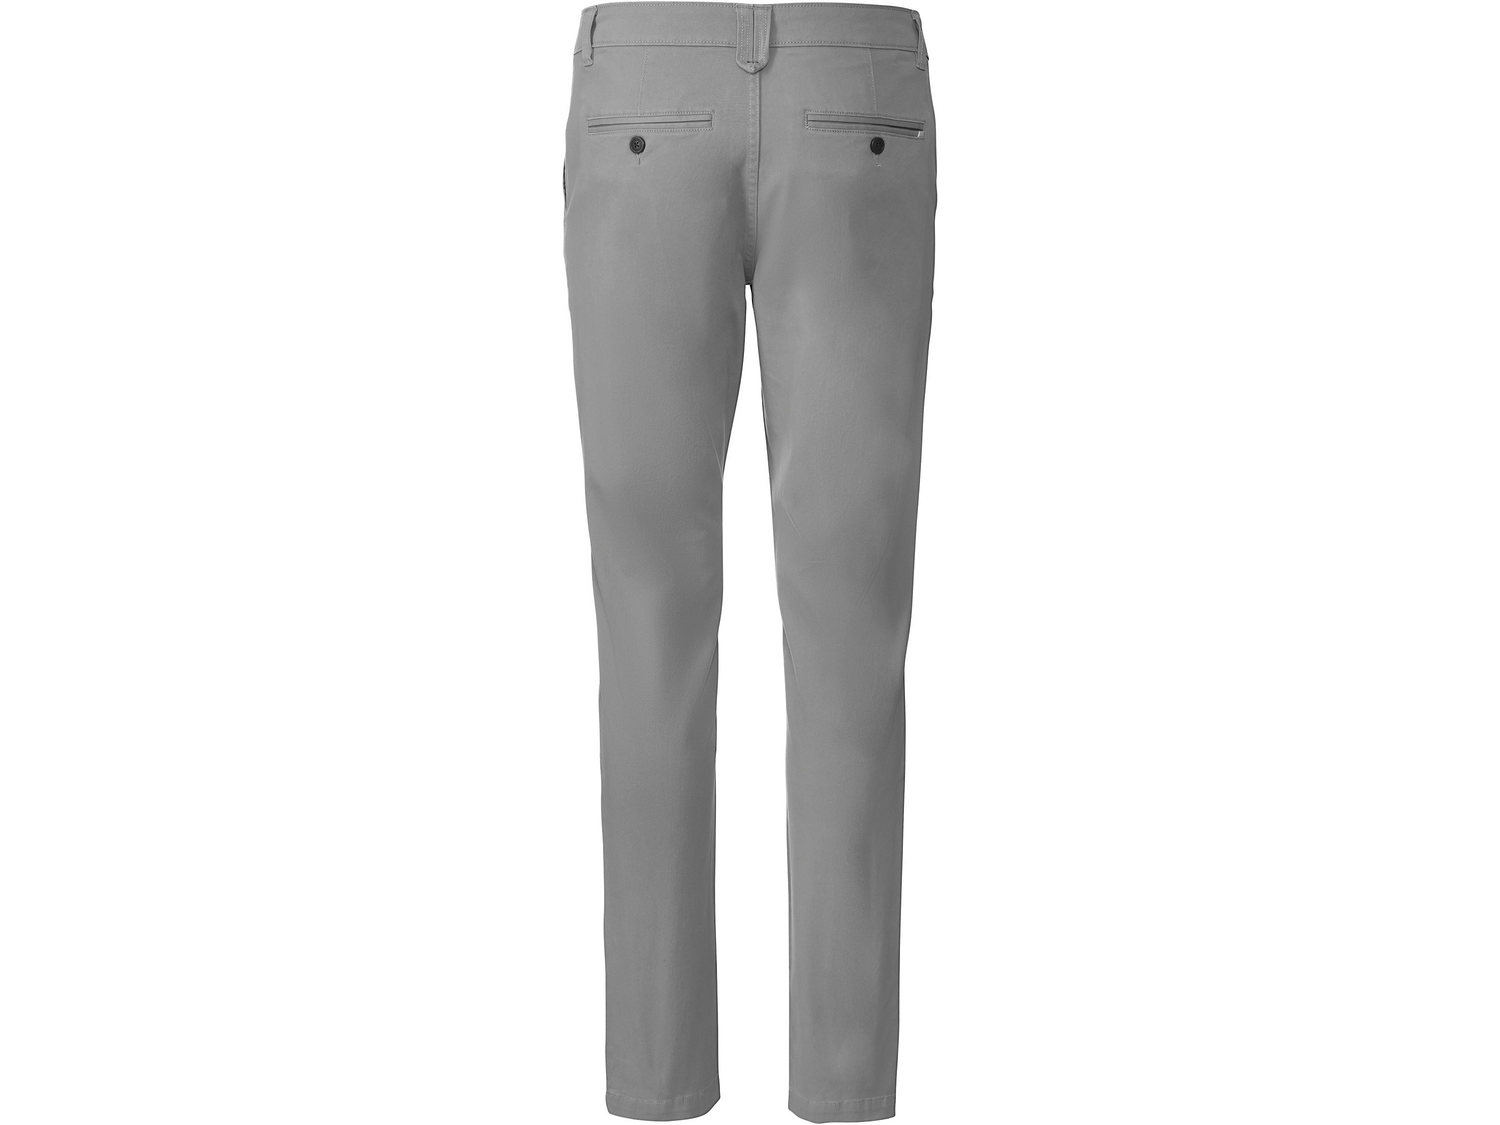 Spodnie chino Livergy, cena 44,99 PLN 
- 98% bawełny, 2% elastanu (LYCRA®)
- ...